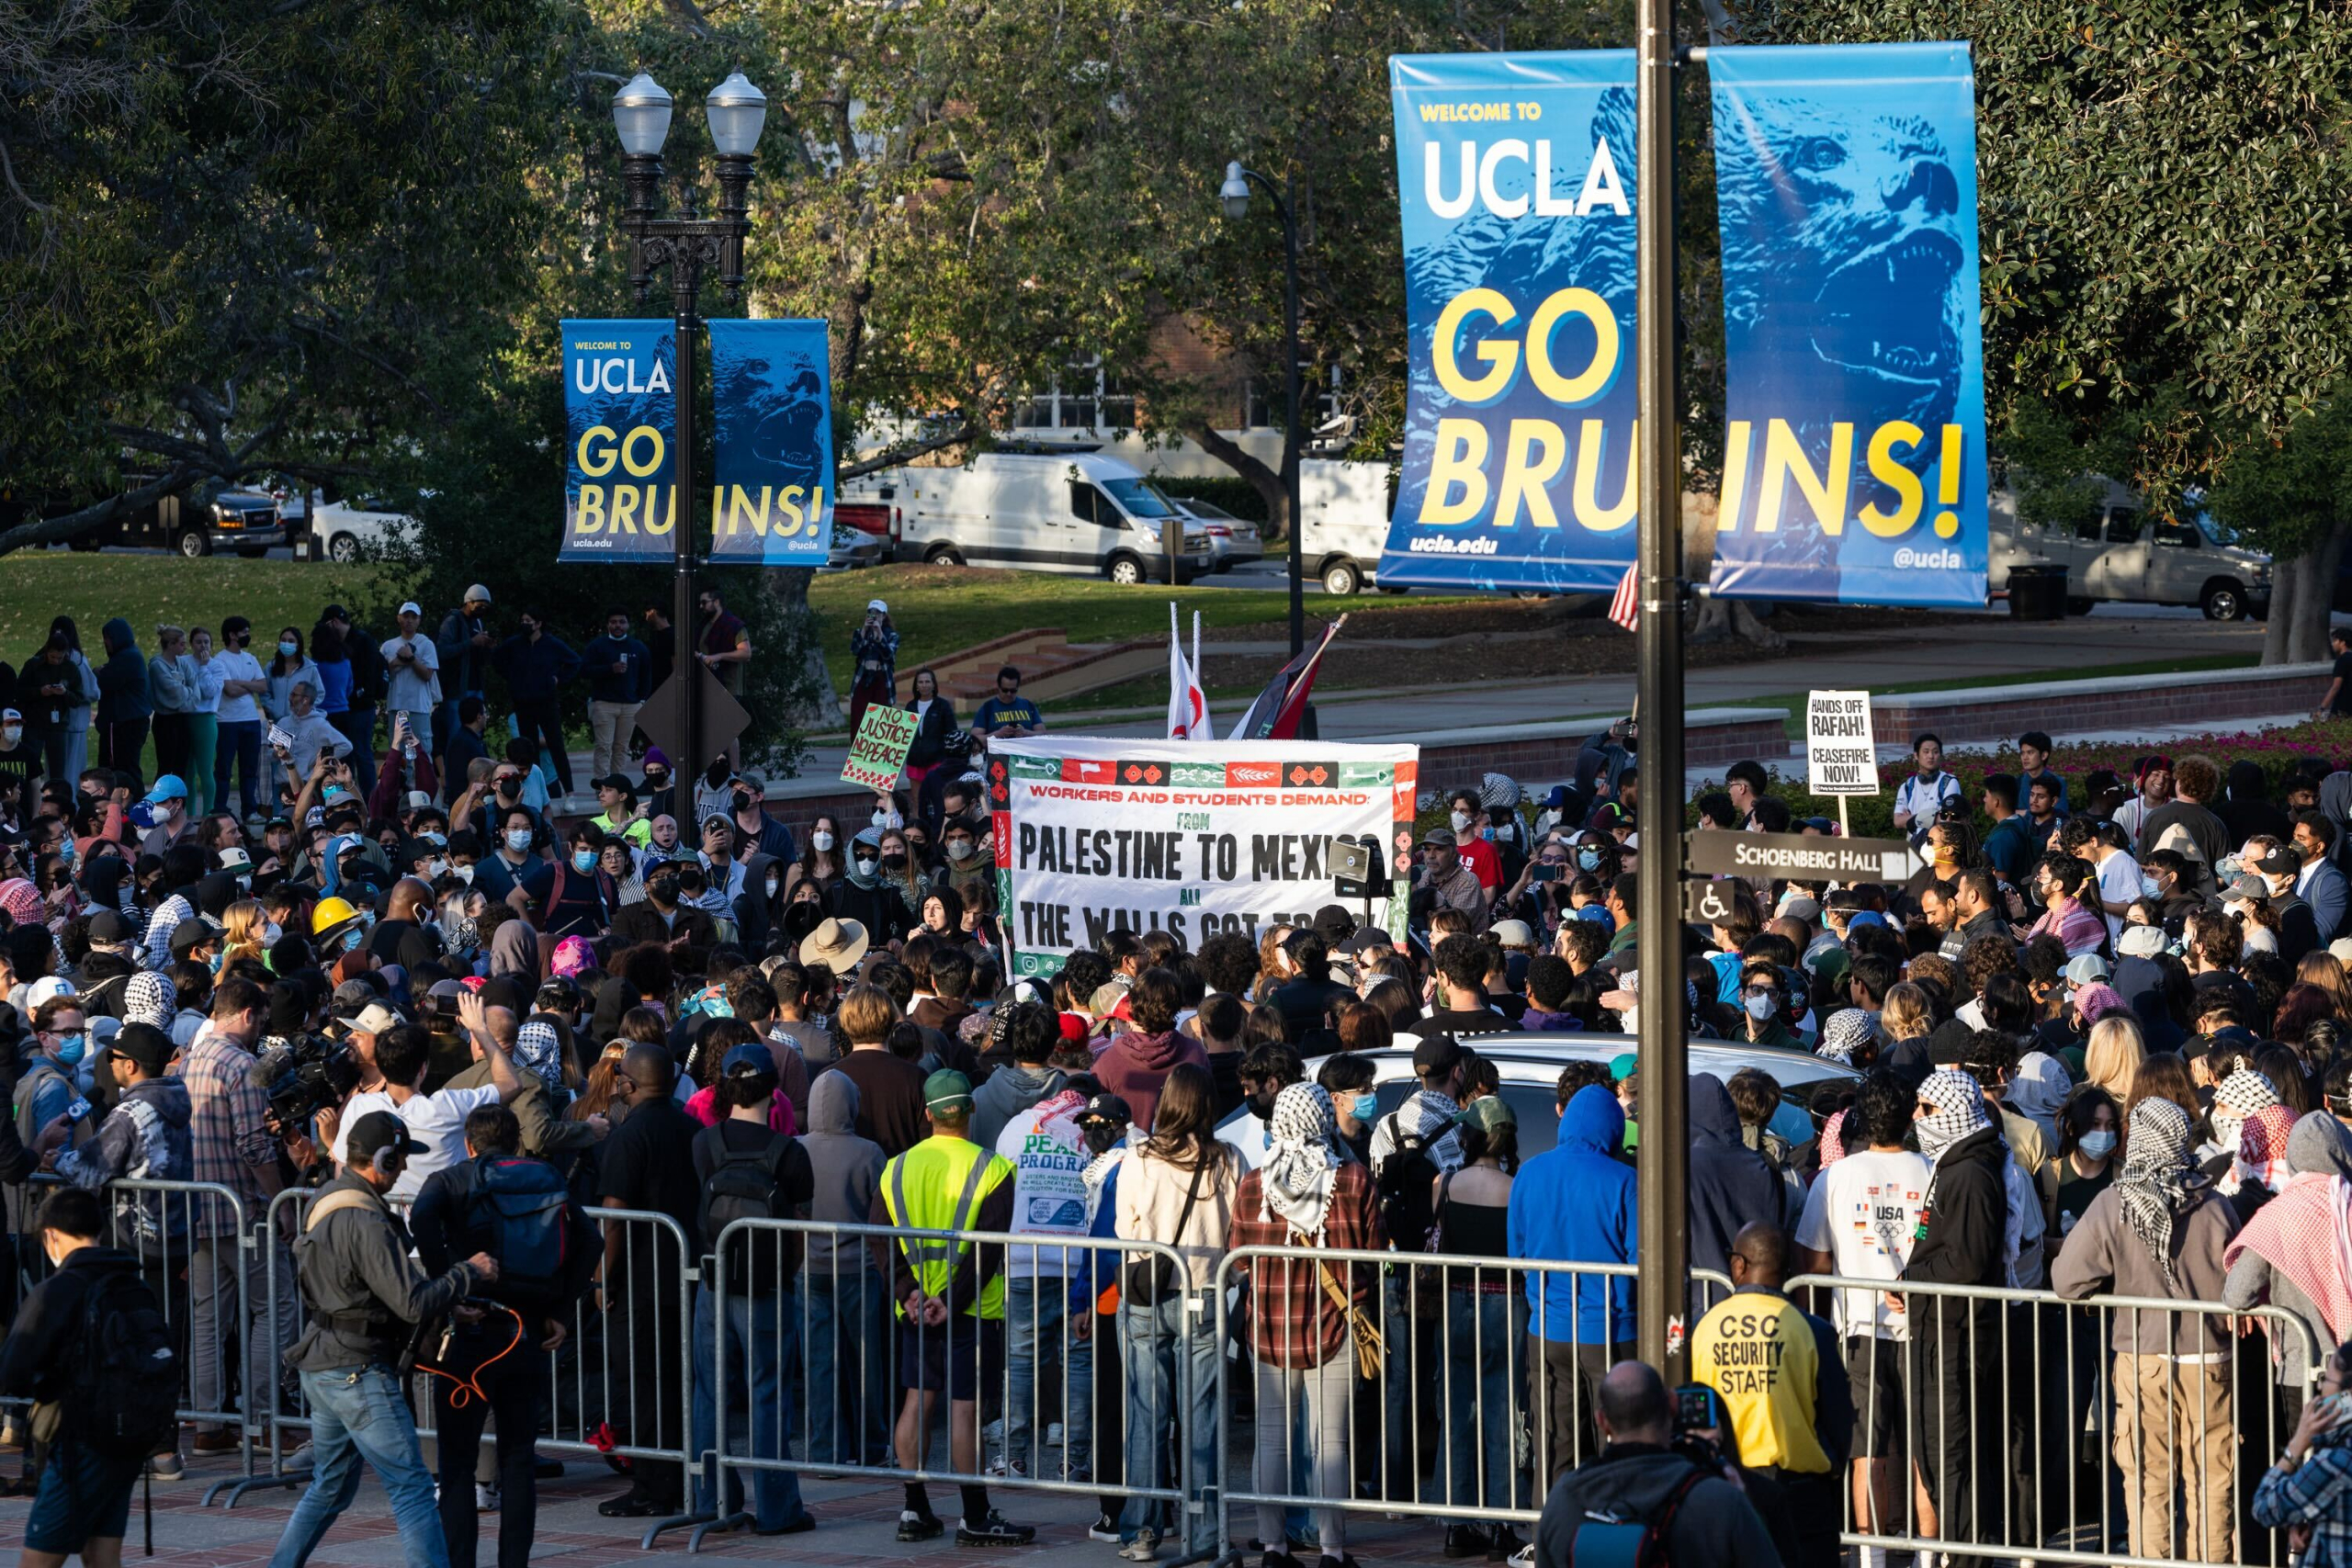 UCLA: El centro de violentos enfrentamientos debido a la tensión que ha generado la guerra en el Medio Oriente